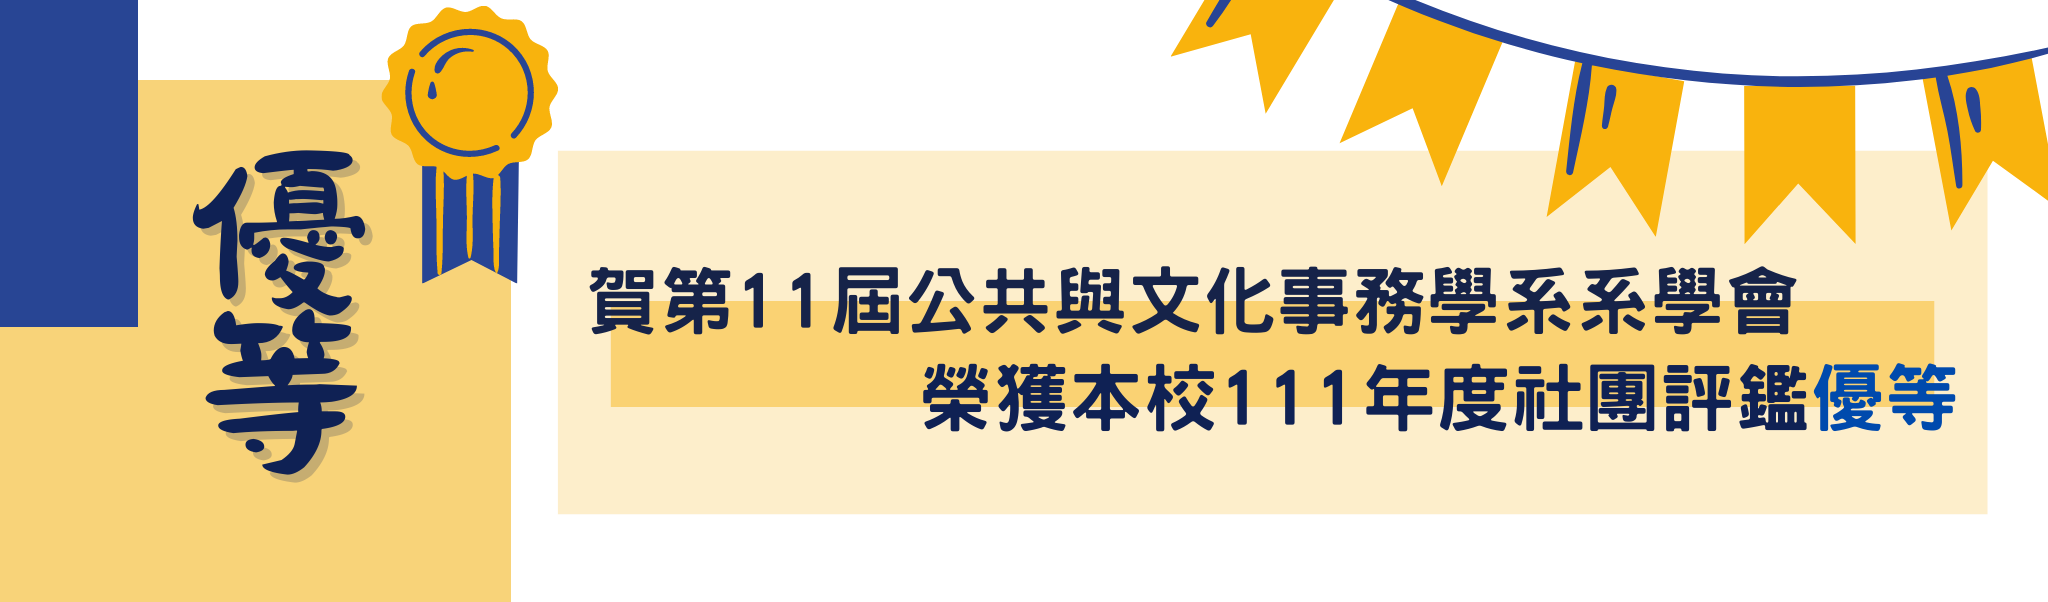 【公事系】賀第11屆公事系系學會榮獲111年度學生社團評價優等